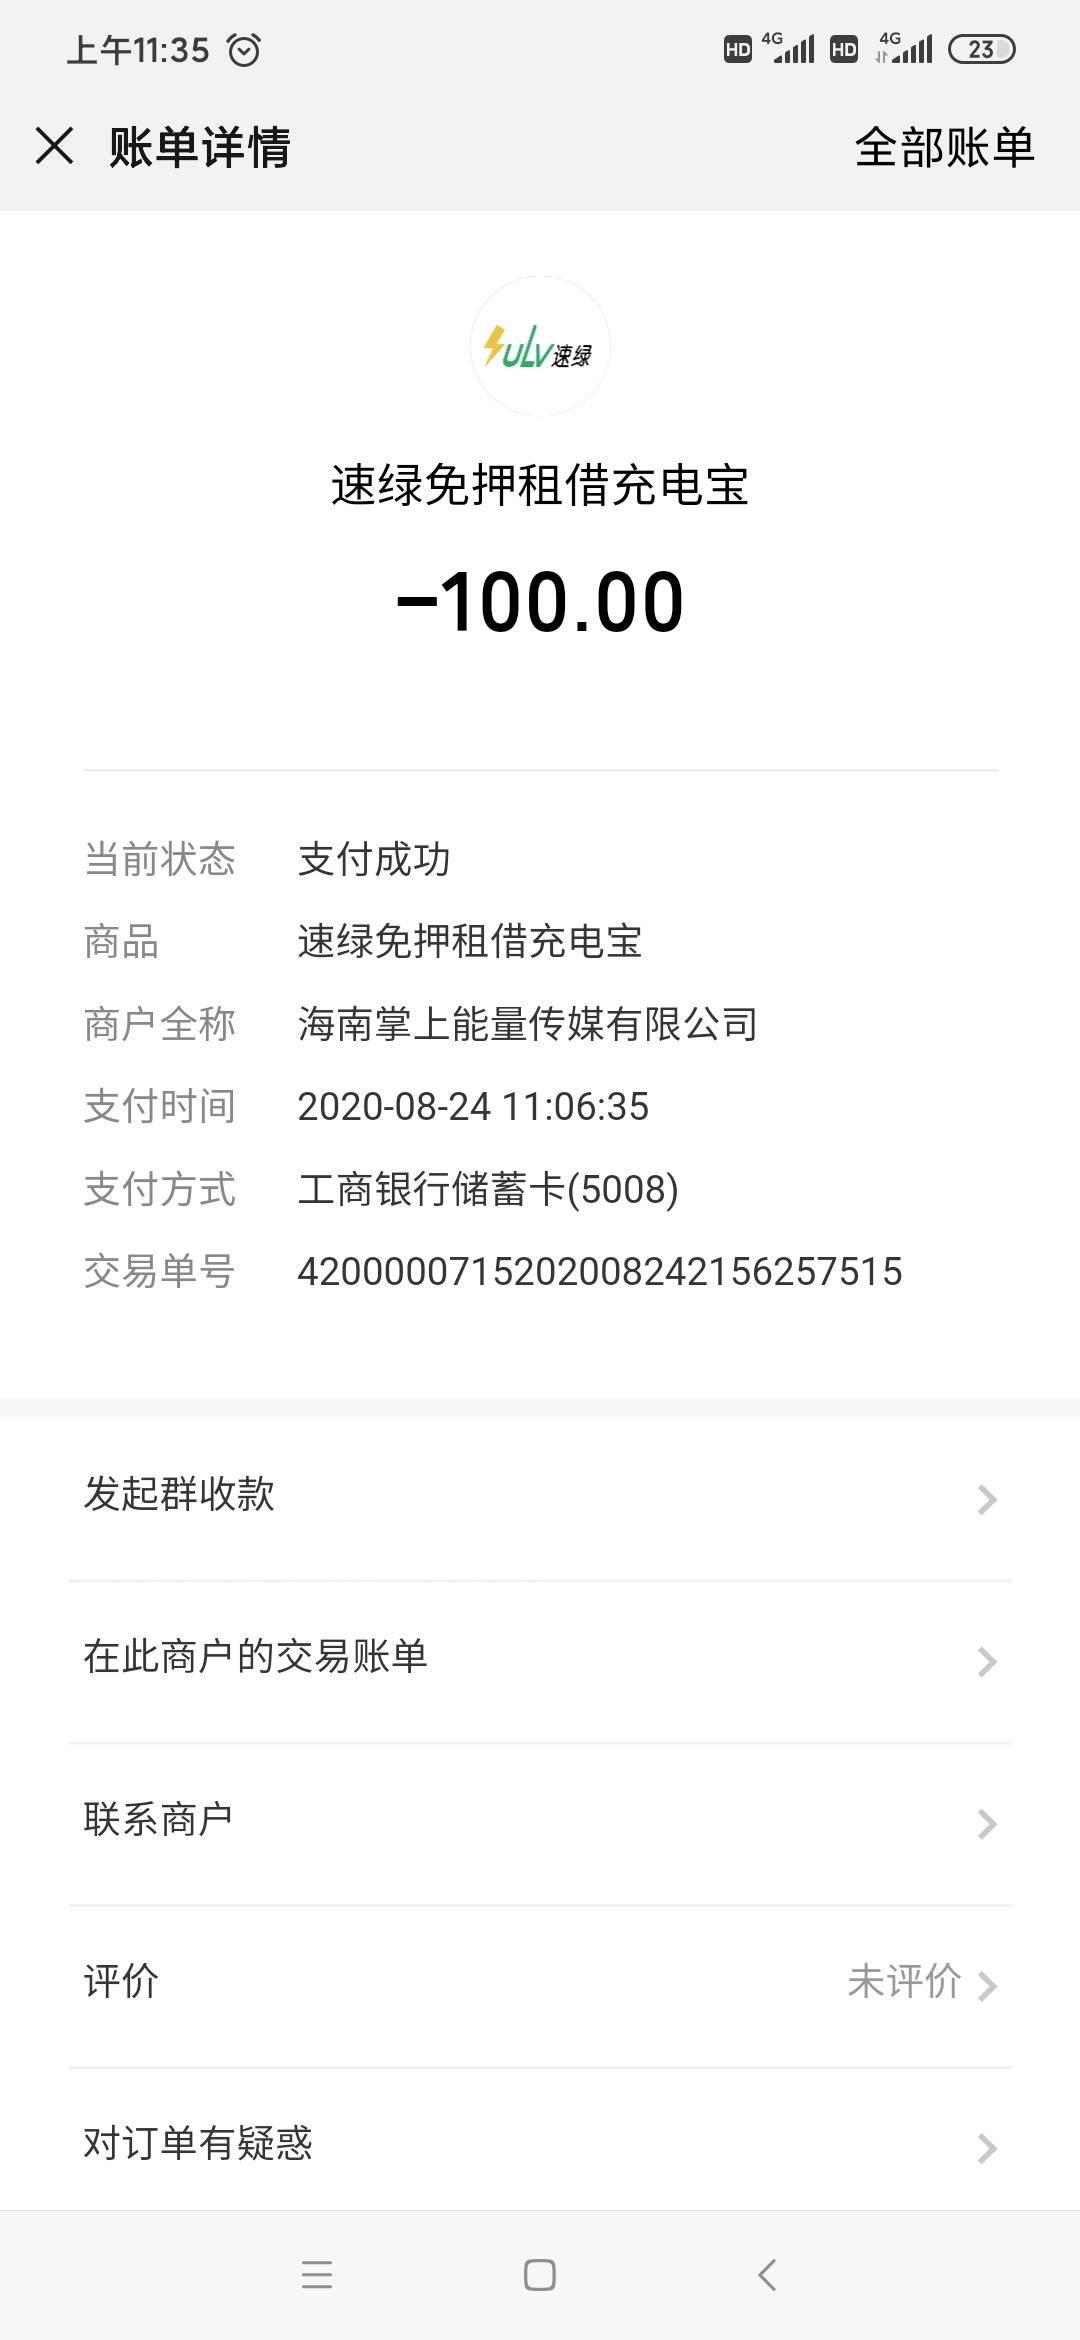 在鑫悦荟ktv扫码借了个充电器挨扣了100块469 / 作者:大龙大龙哥 / 帖子ID:276009